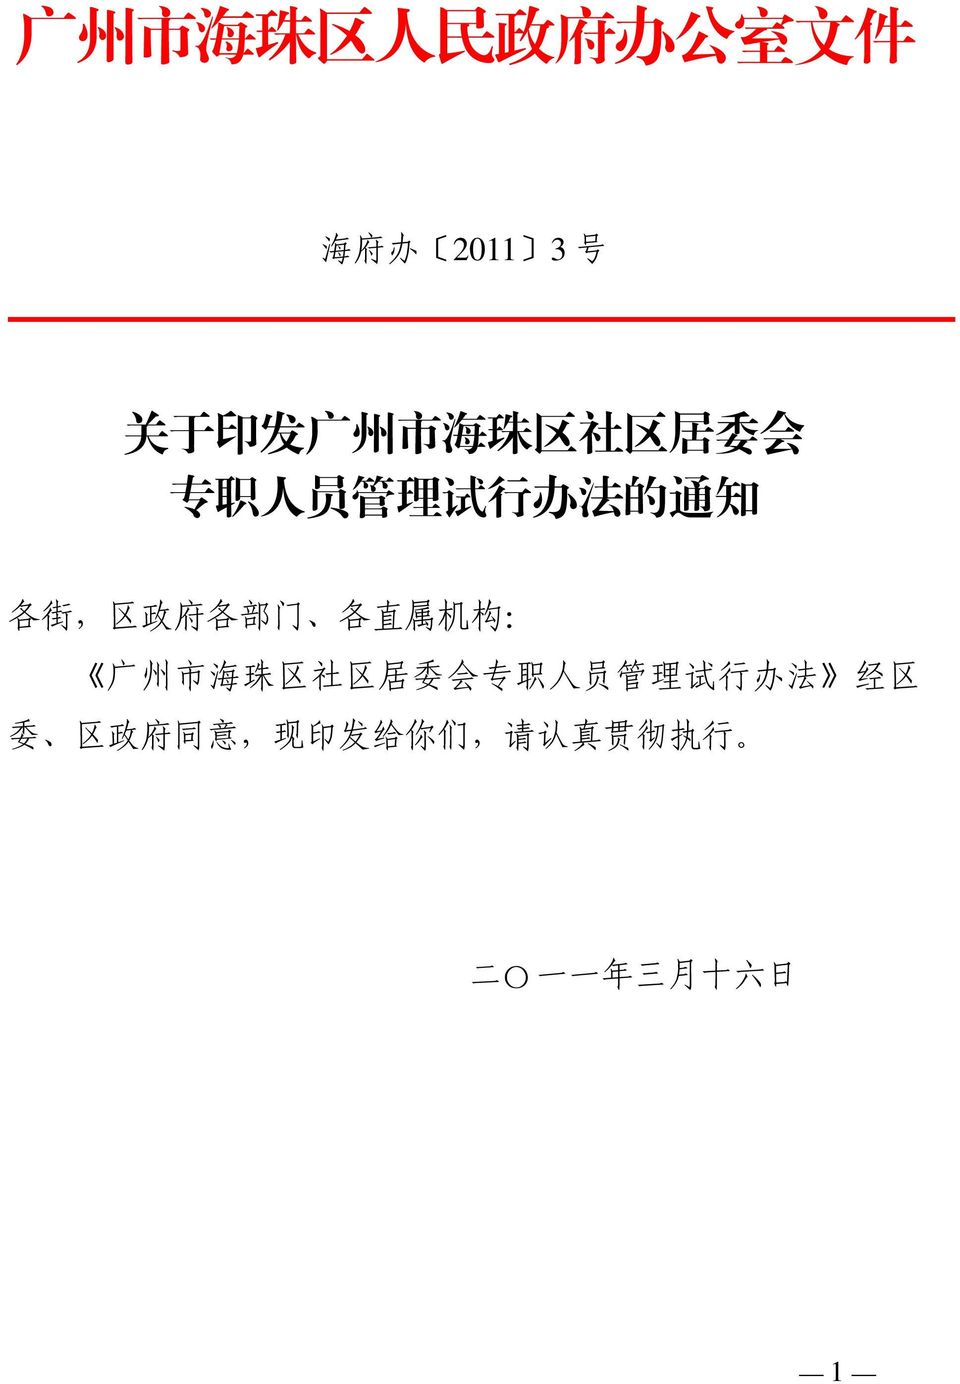 各 直 属 机 构 : 广 州 市 海 珠 区 社 区 居 委 会 专 职 人 员 管 理 试 行 办 法 经 区 委